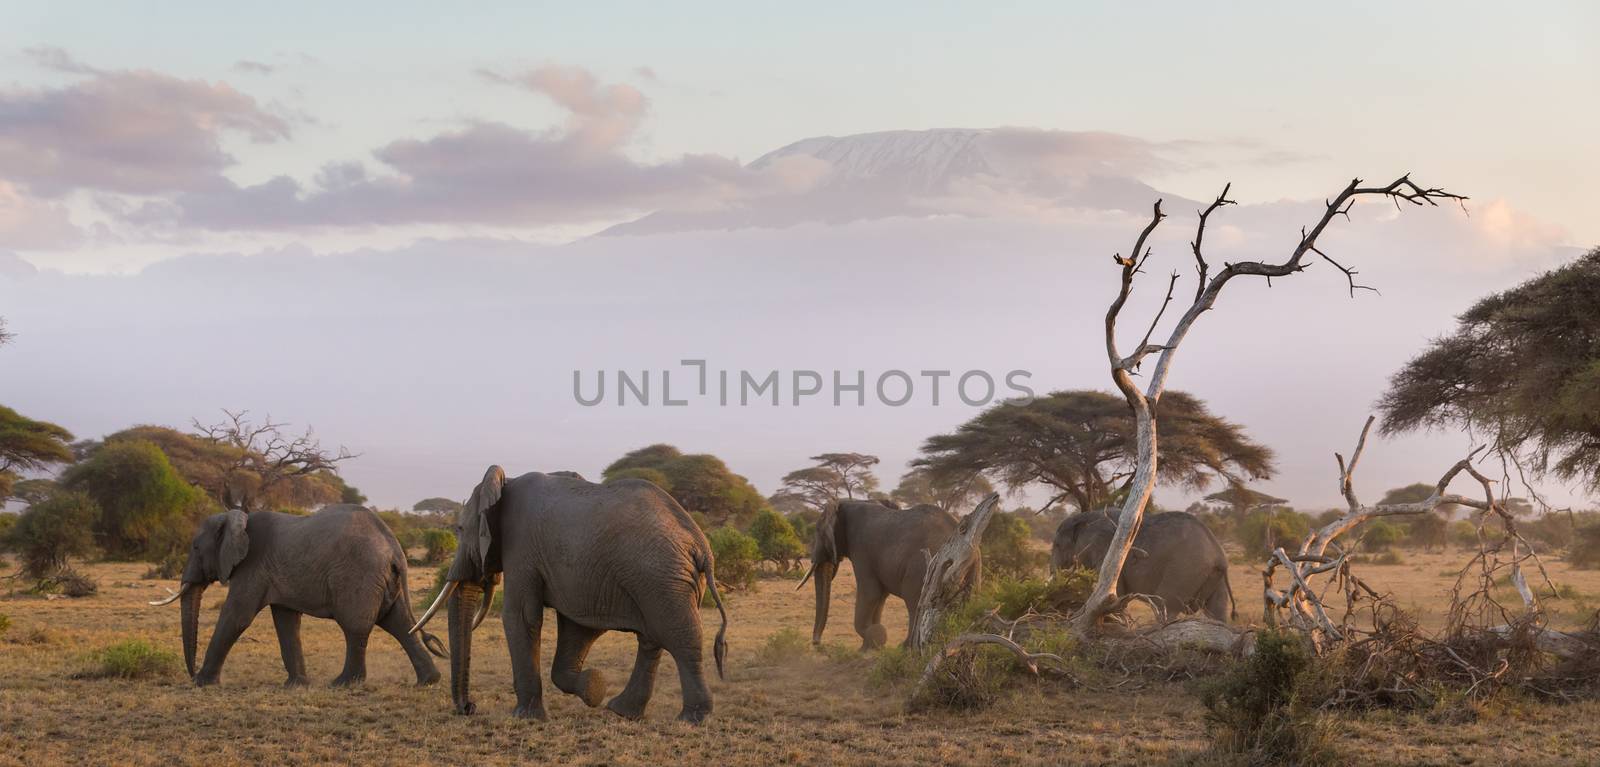 Elephants in front of Kilimanjaro, Amboseli, Kenya by kasto